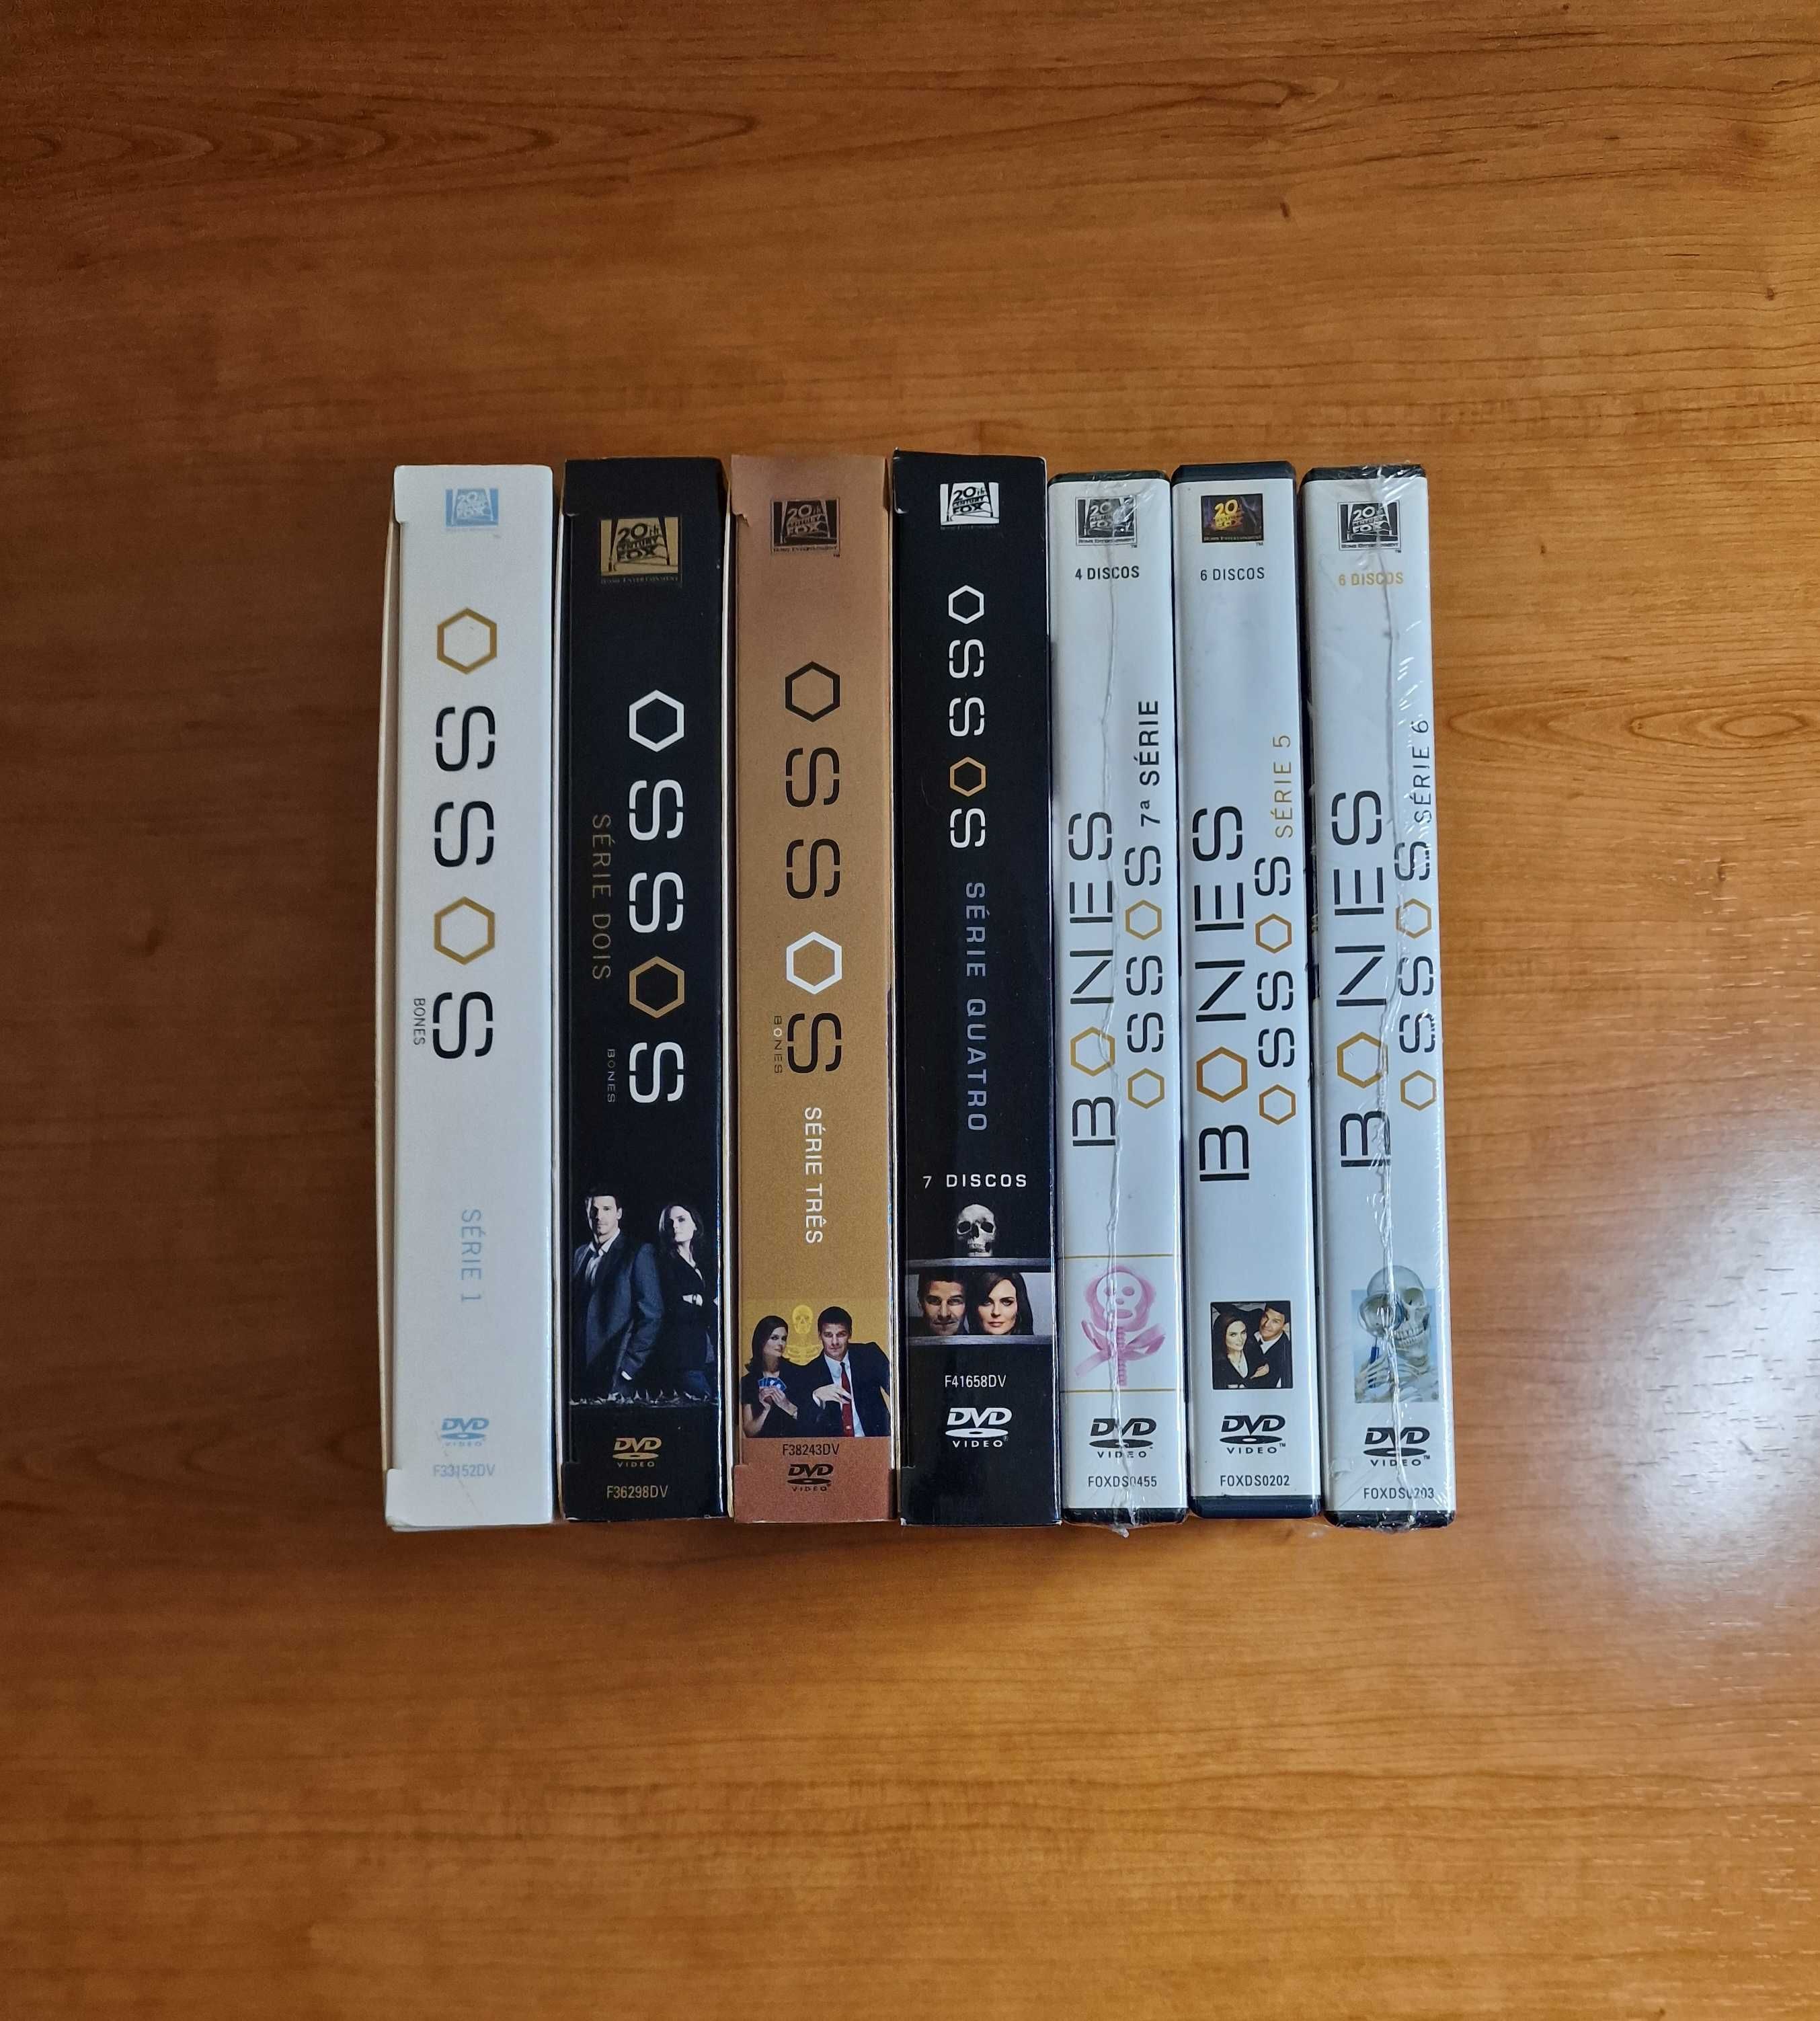 Coleção BONES: OSSOS Temporadas 1-7 Emily Deschanel) 39dvds VICIANTE!